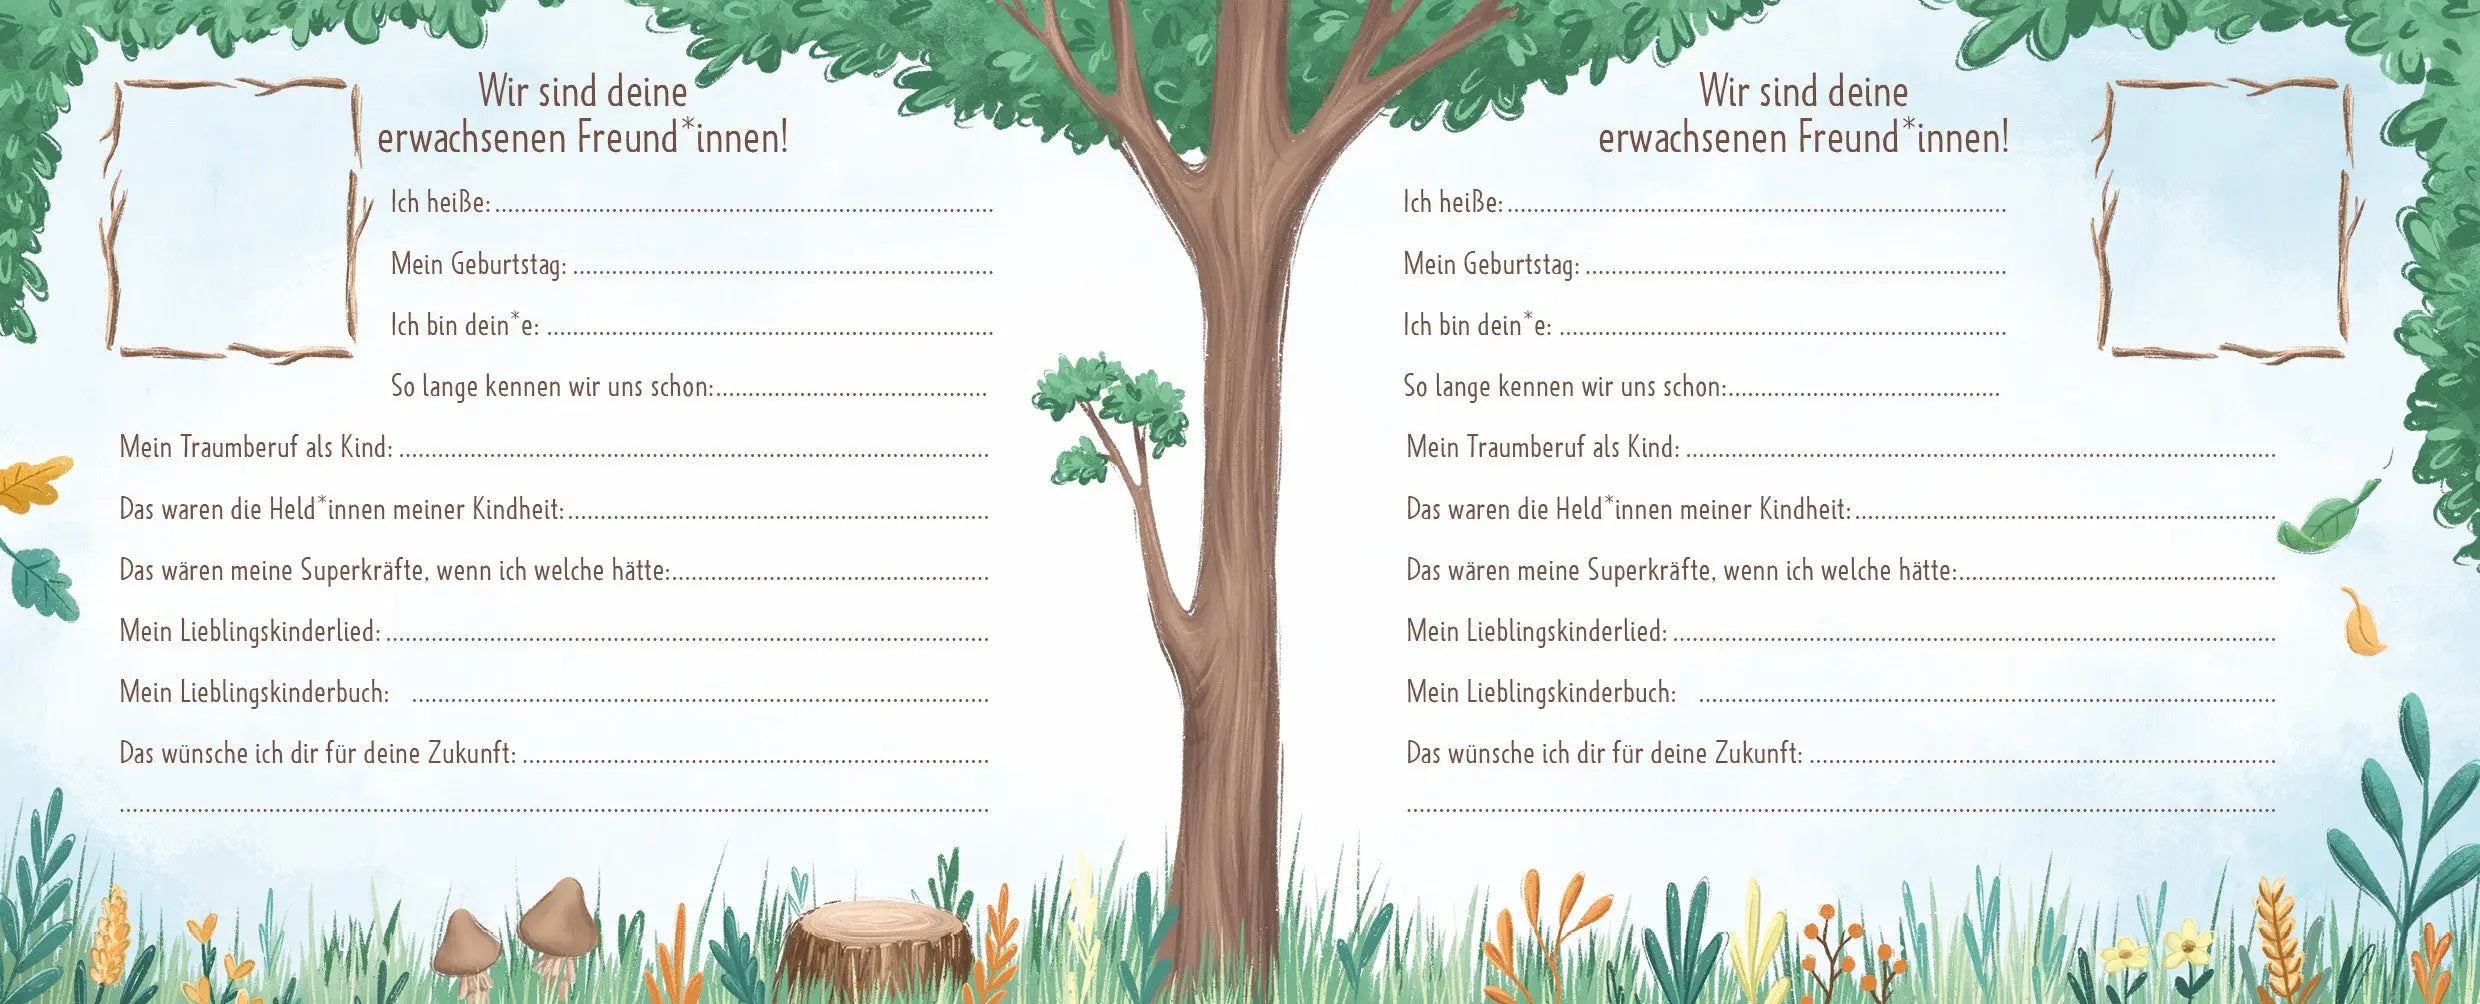 Alle meine Freunde - Das Kindergartenalbum EMF Verlag